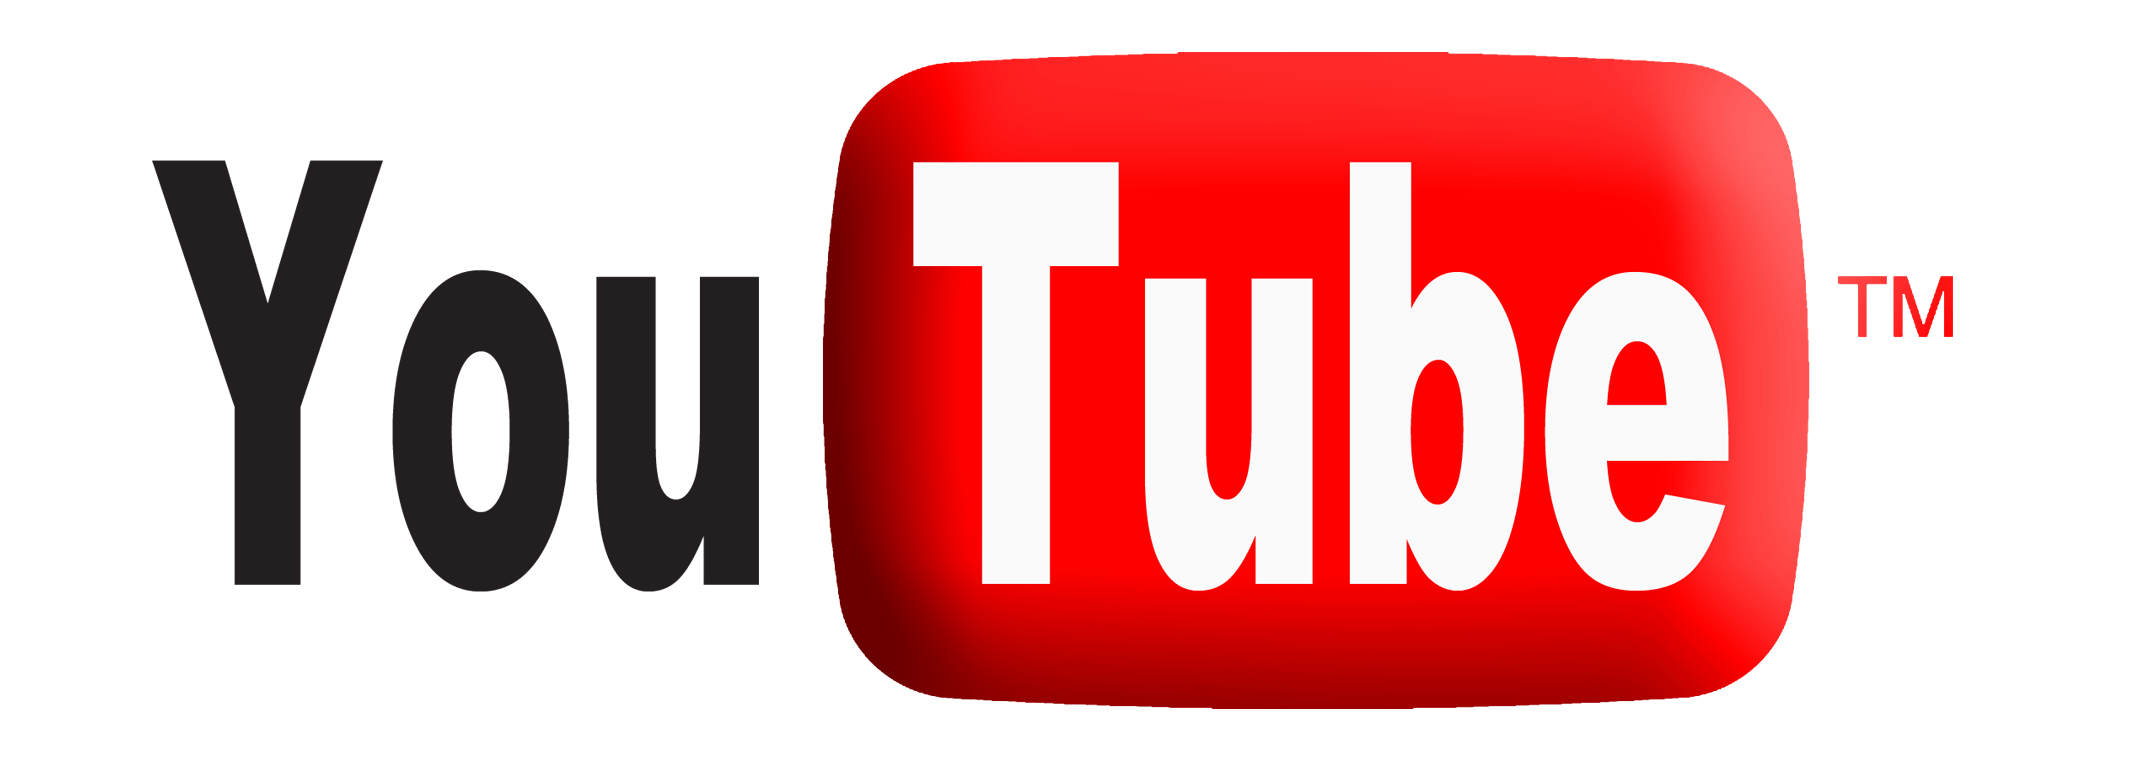 2016 New YouTube Logo - YouTube Logo PNG Transparent Background